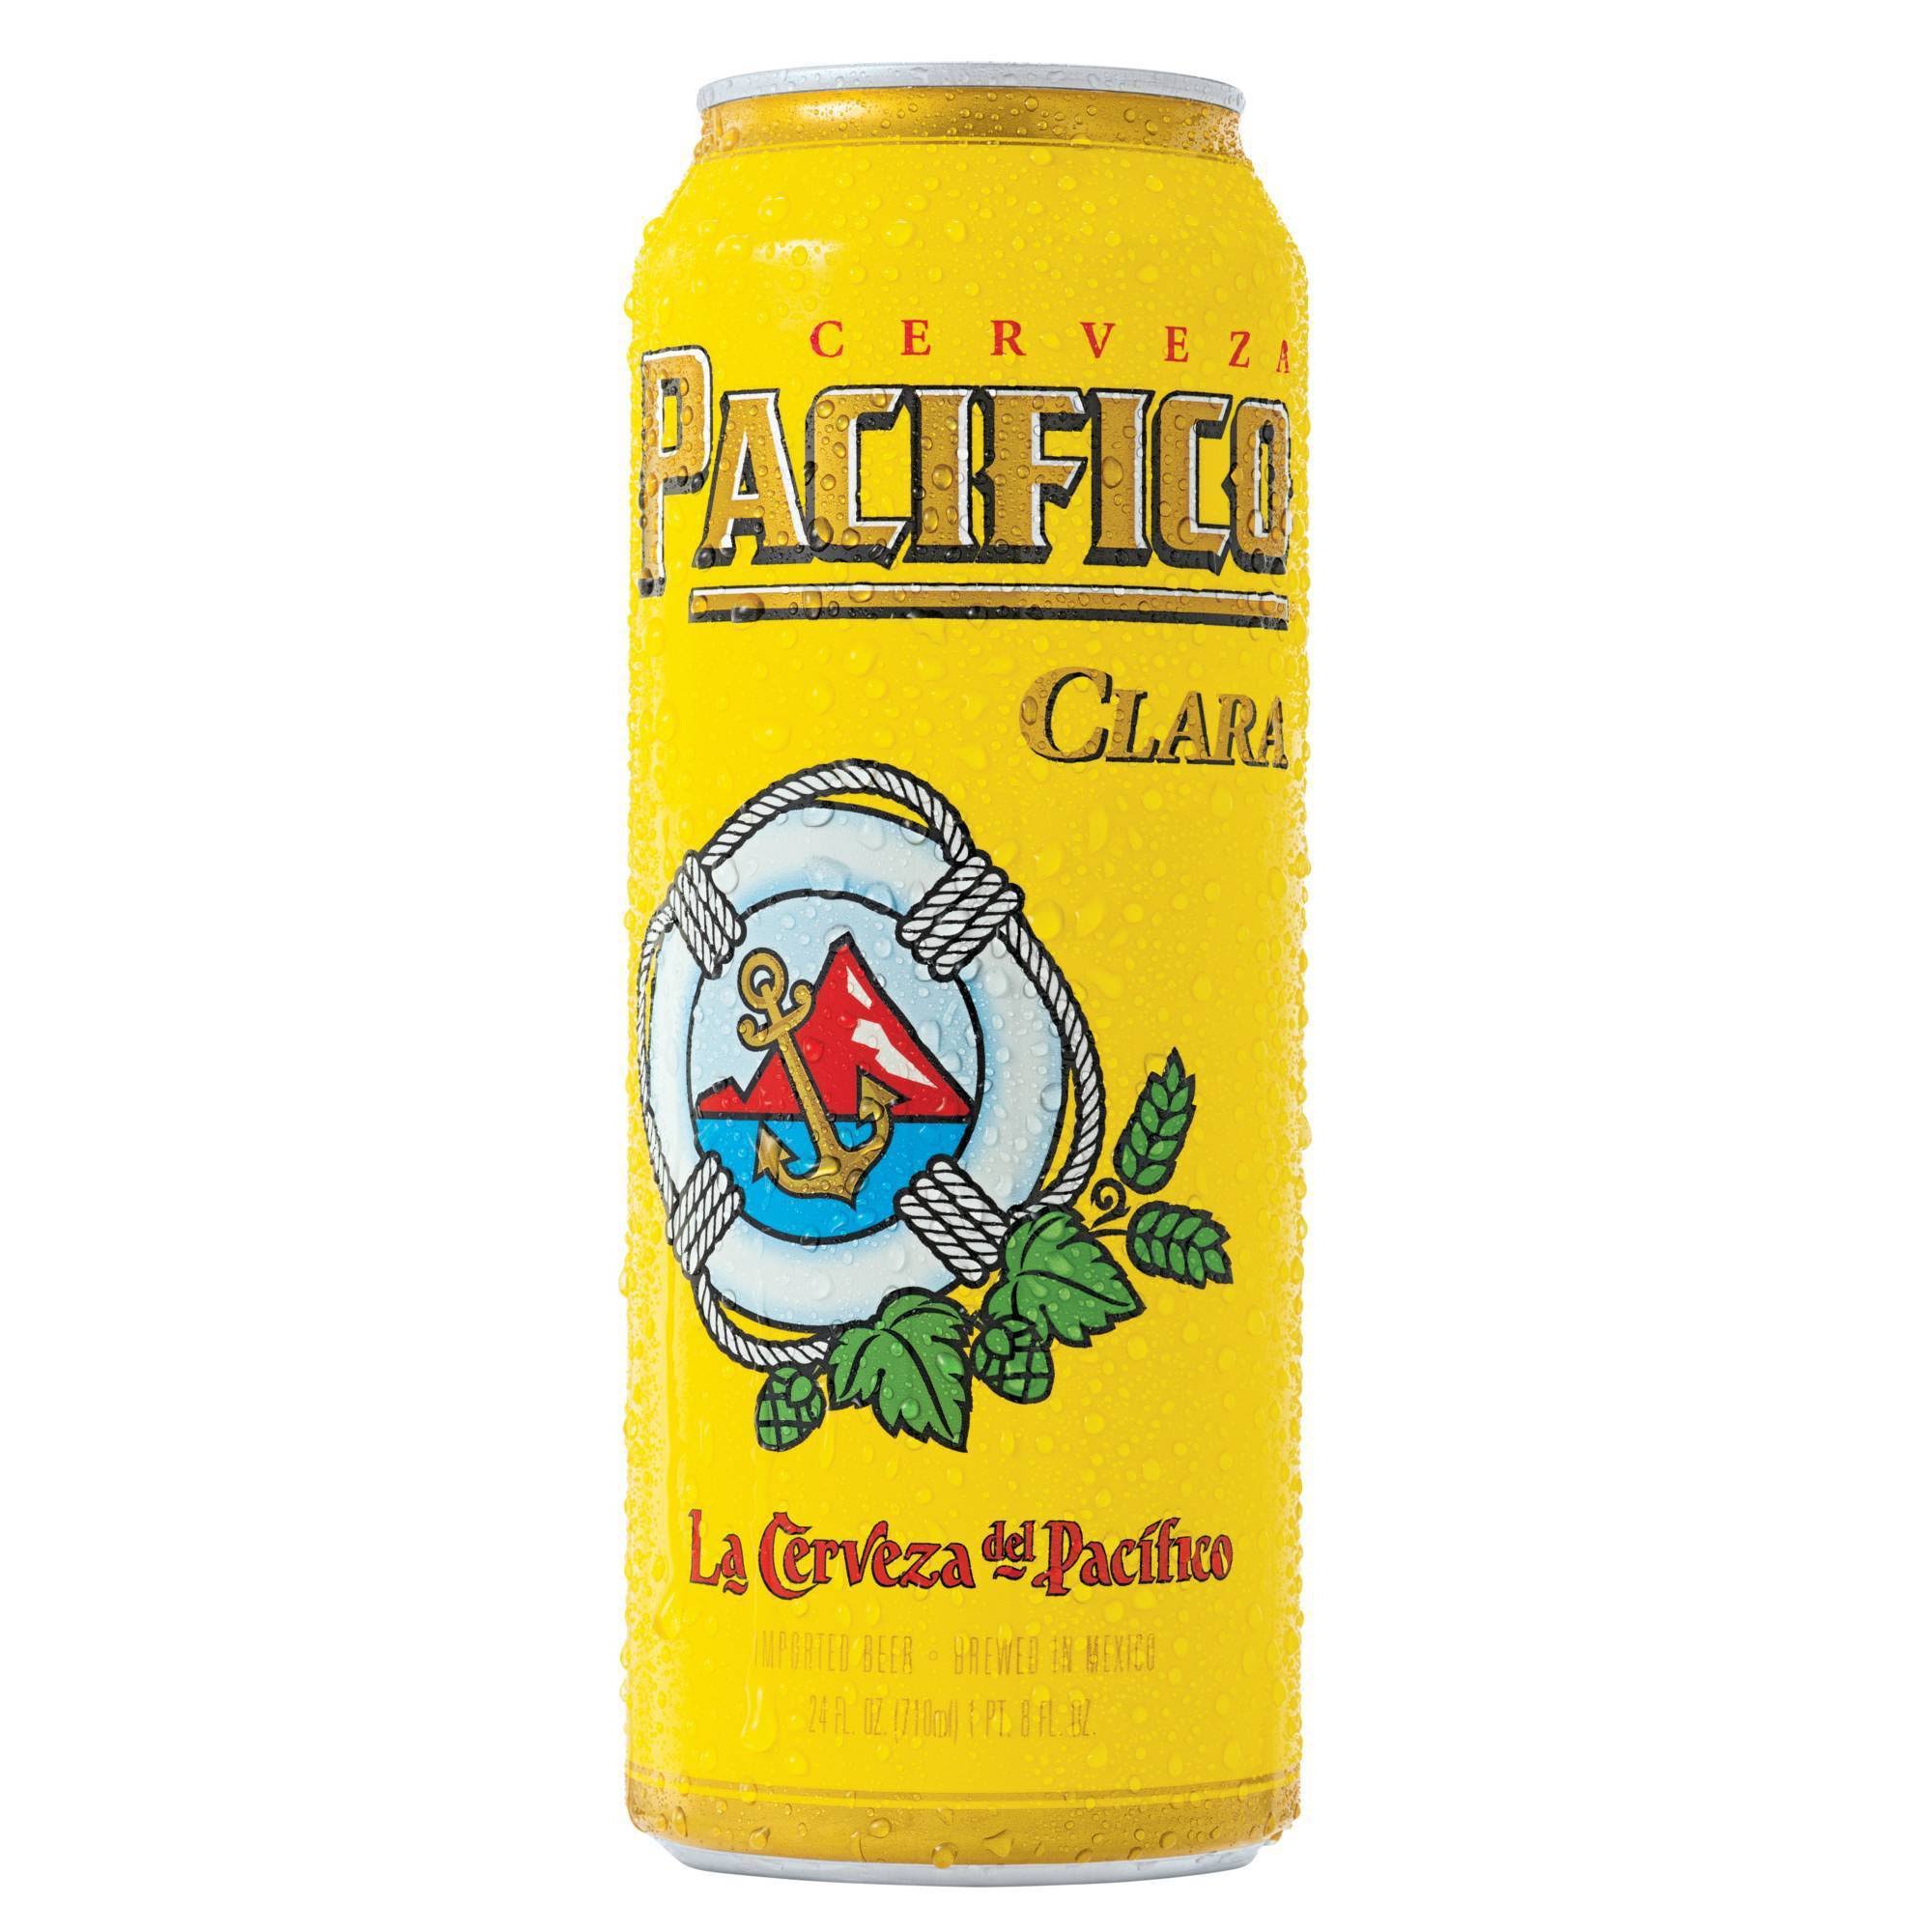 Pacifico Beer, Imported, Clara - 24 fl oz